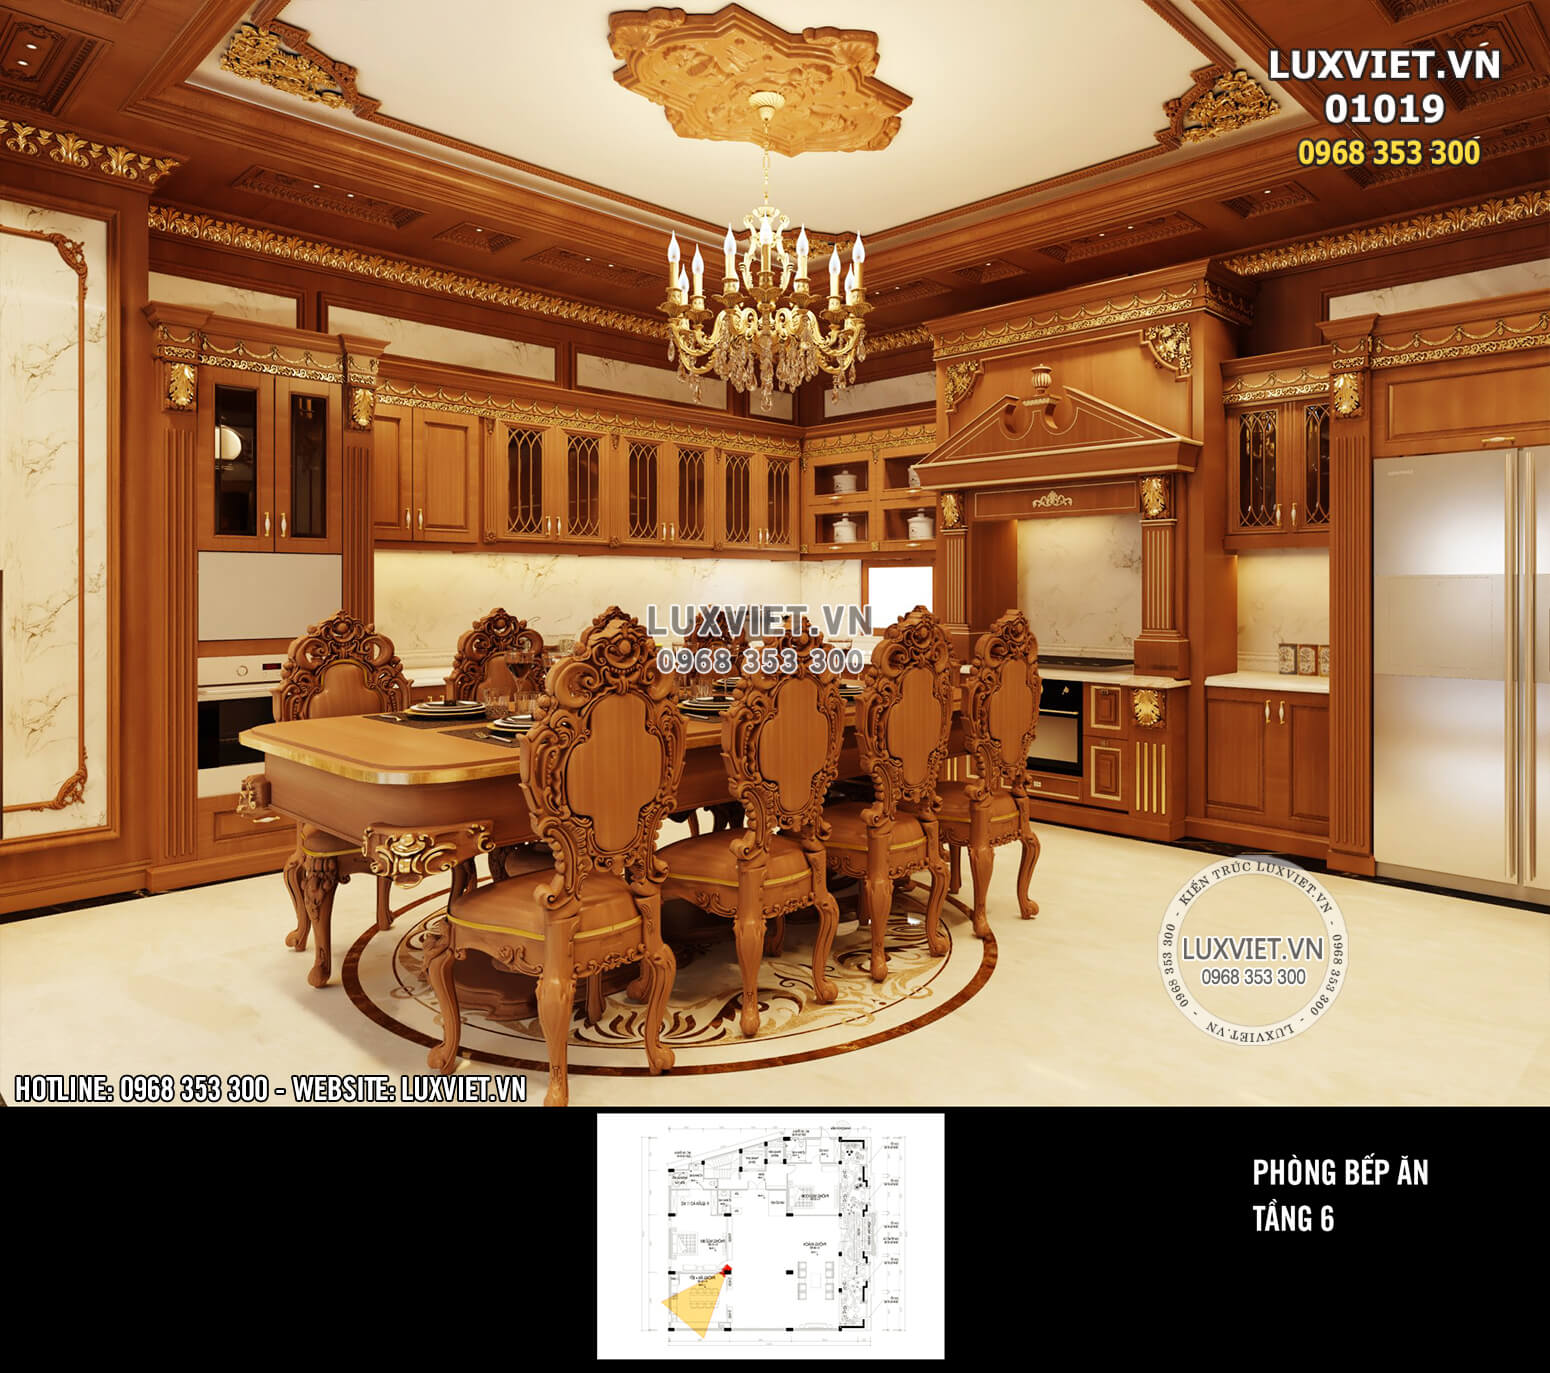 Hình ảnh: Phòng ăn với nội thất bằng gỗ tân cổ điển đẹp mắt - LV 01019